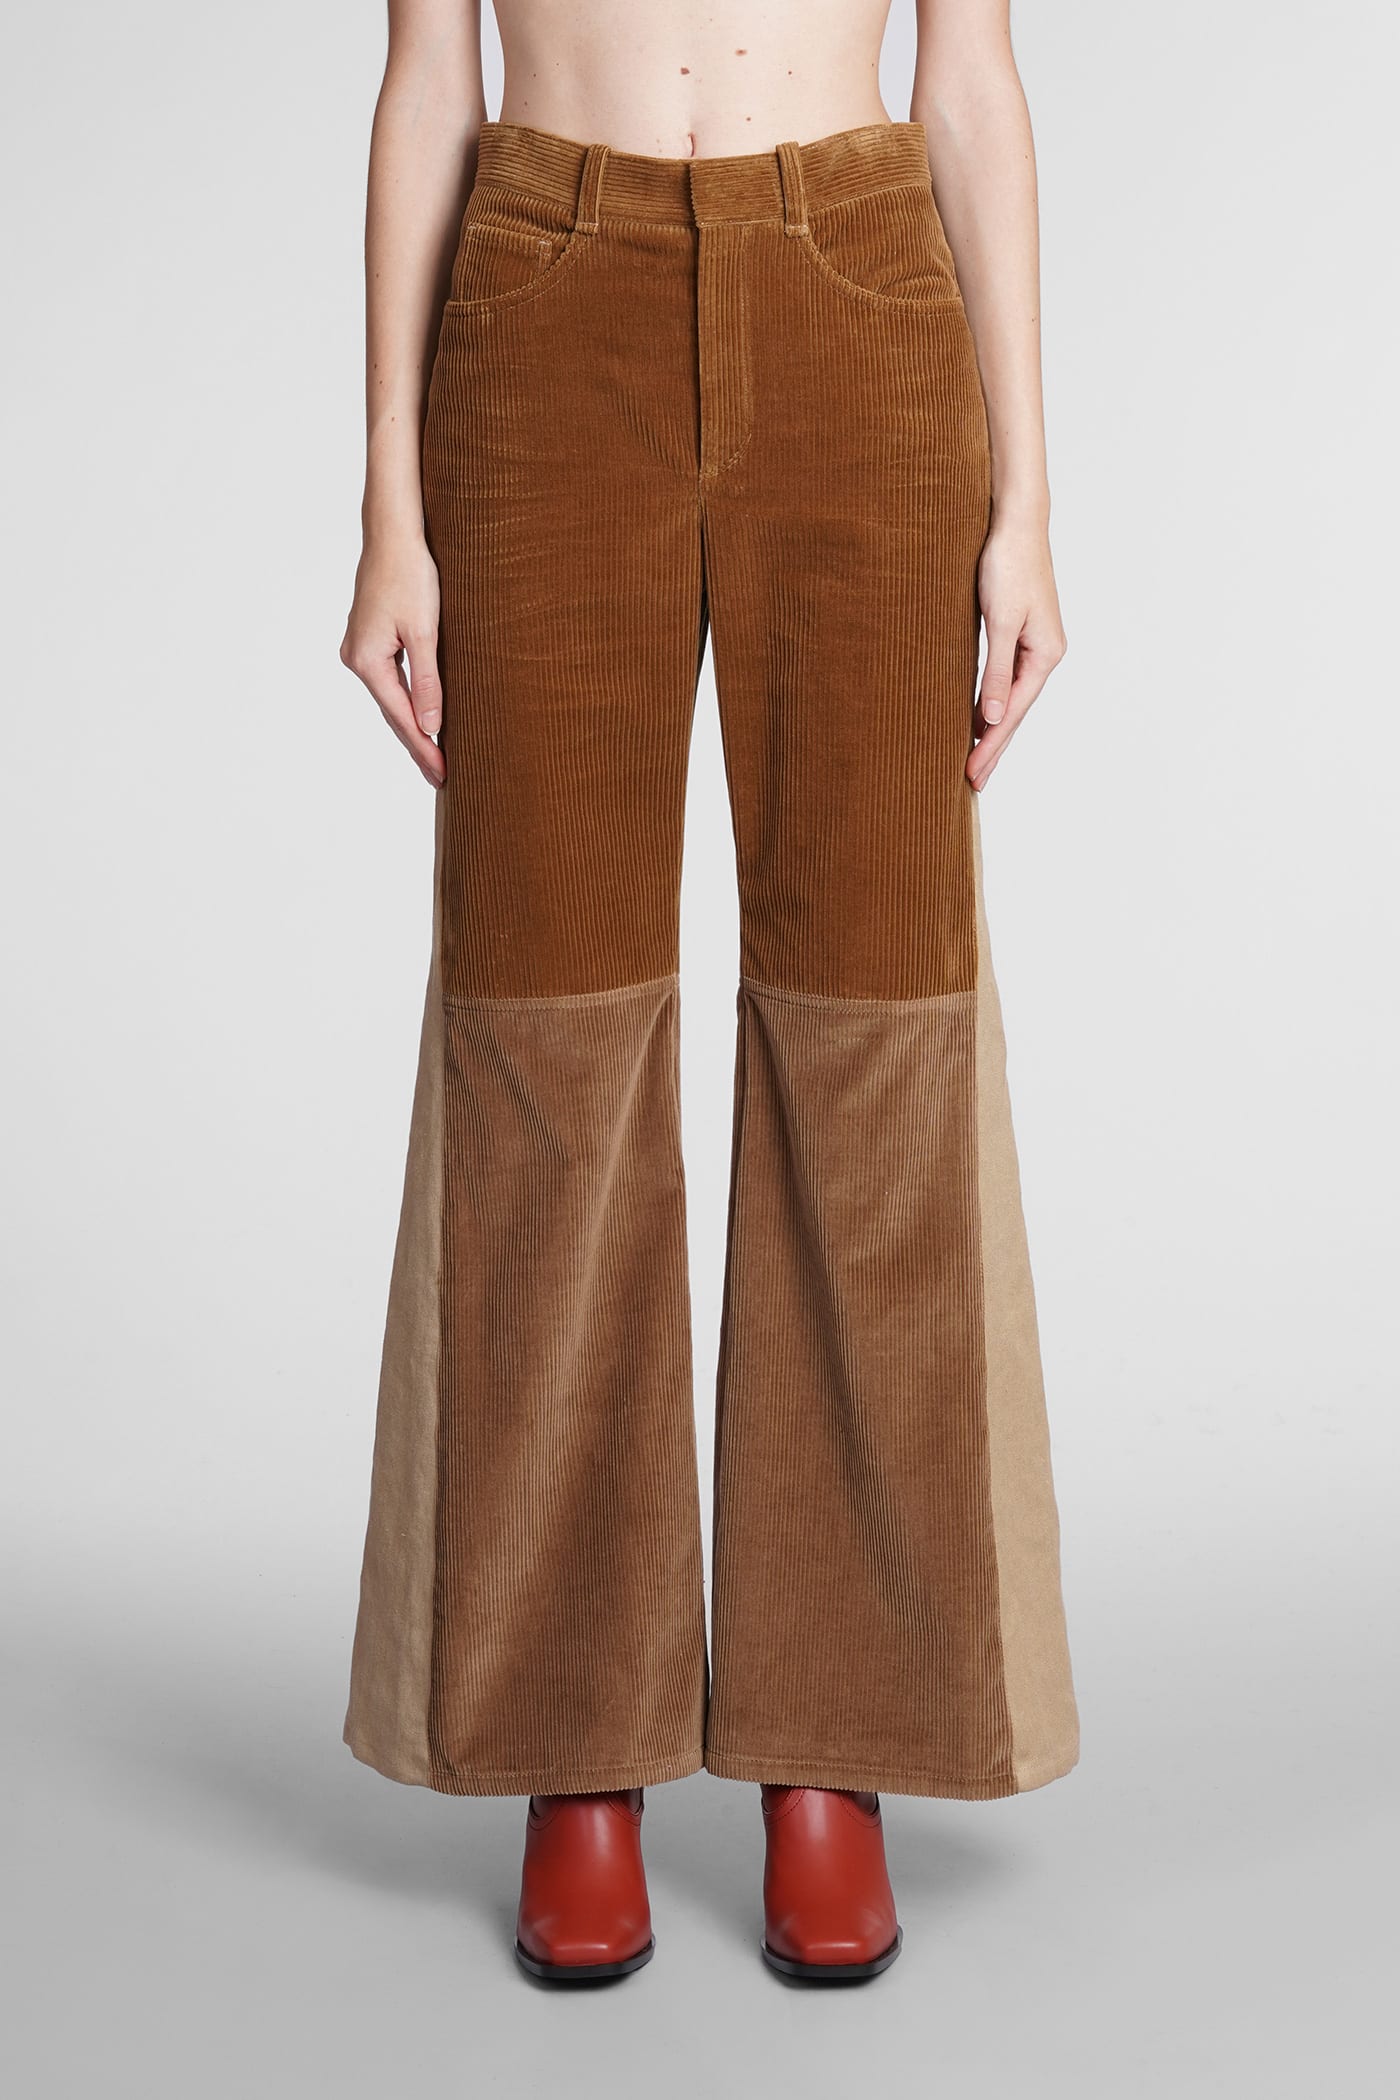 Chloé Pants In Brown Wool